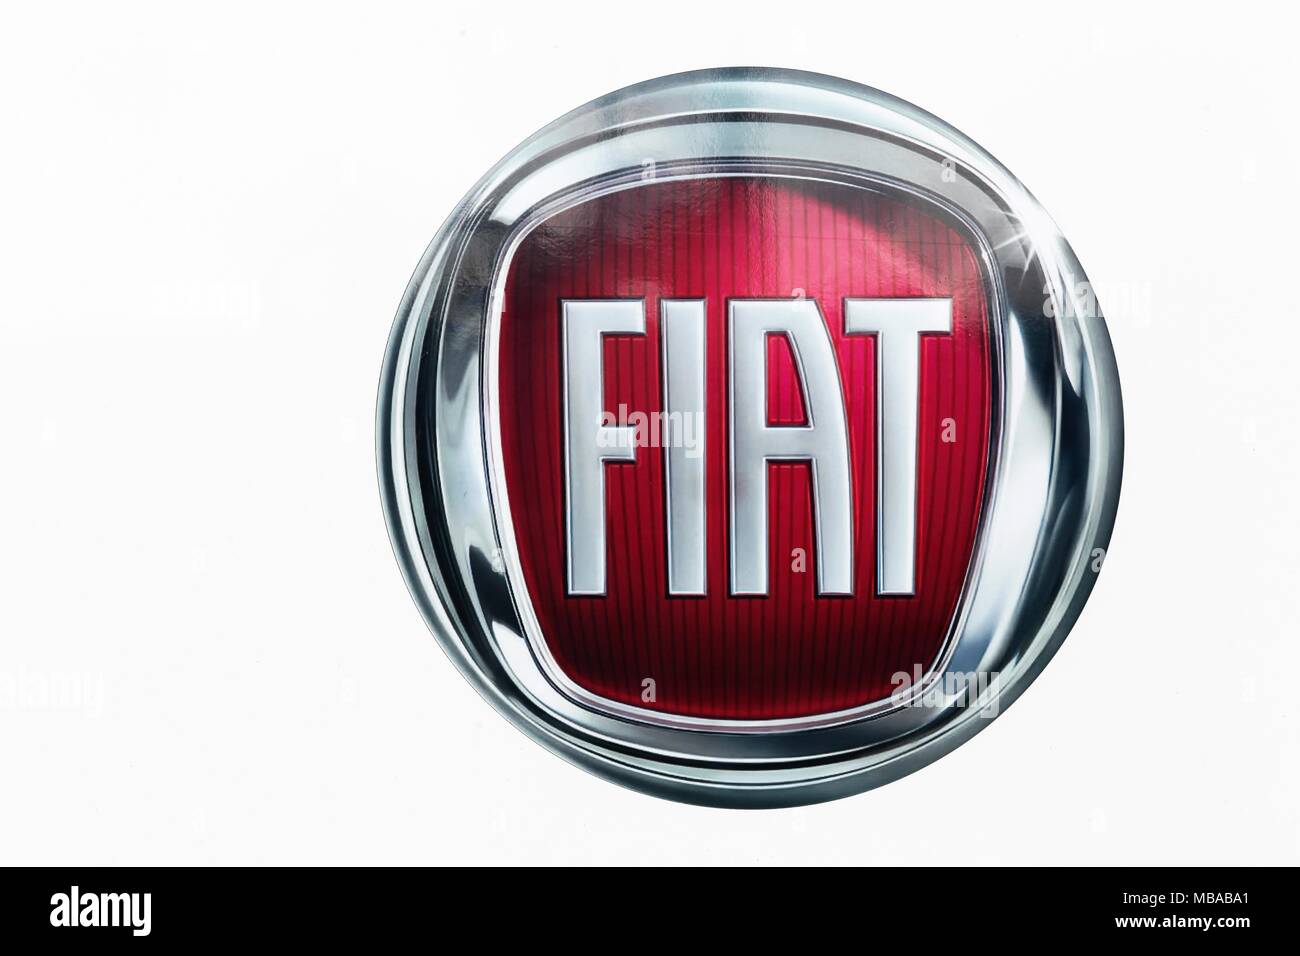 Roskilde, Danemark - 10 septembre 2017 : Fiat logo sur un mur. Fiat Chrysler automobiles est une société italo-américain Banque D'Images